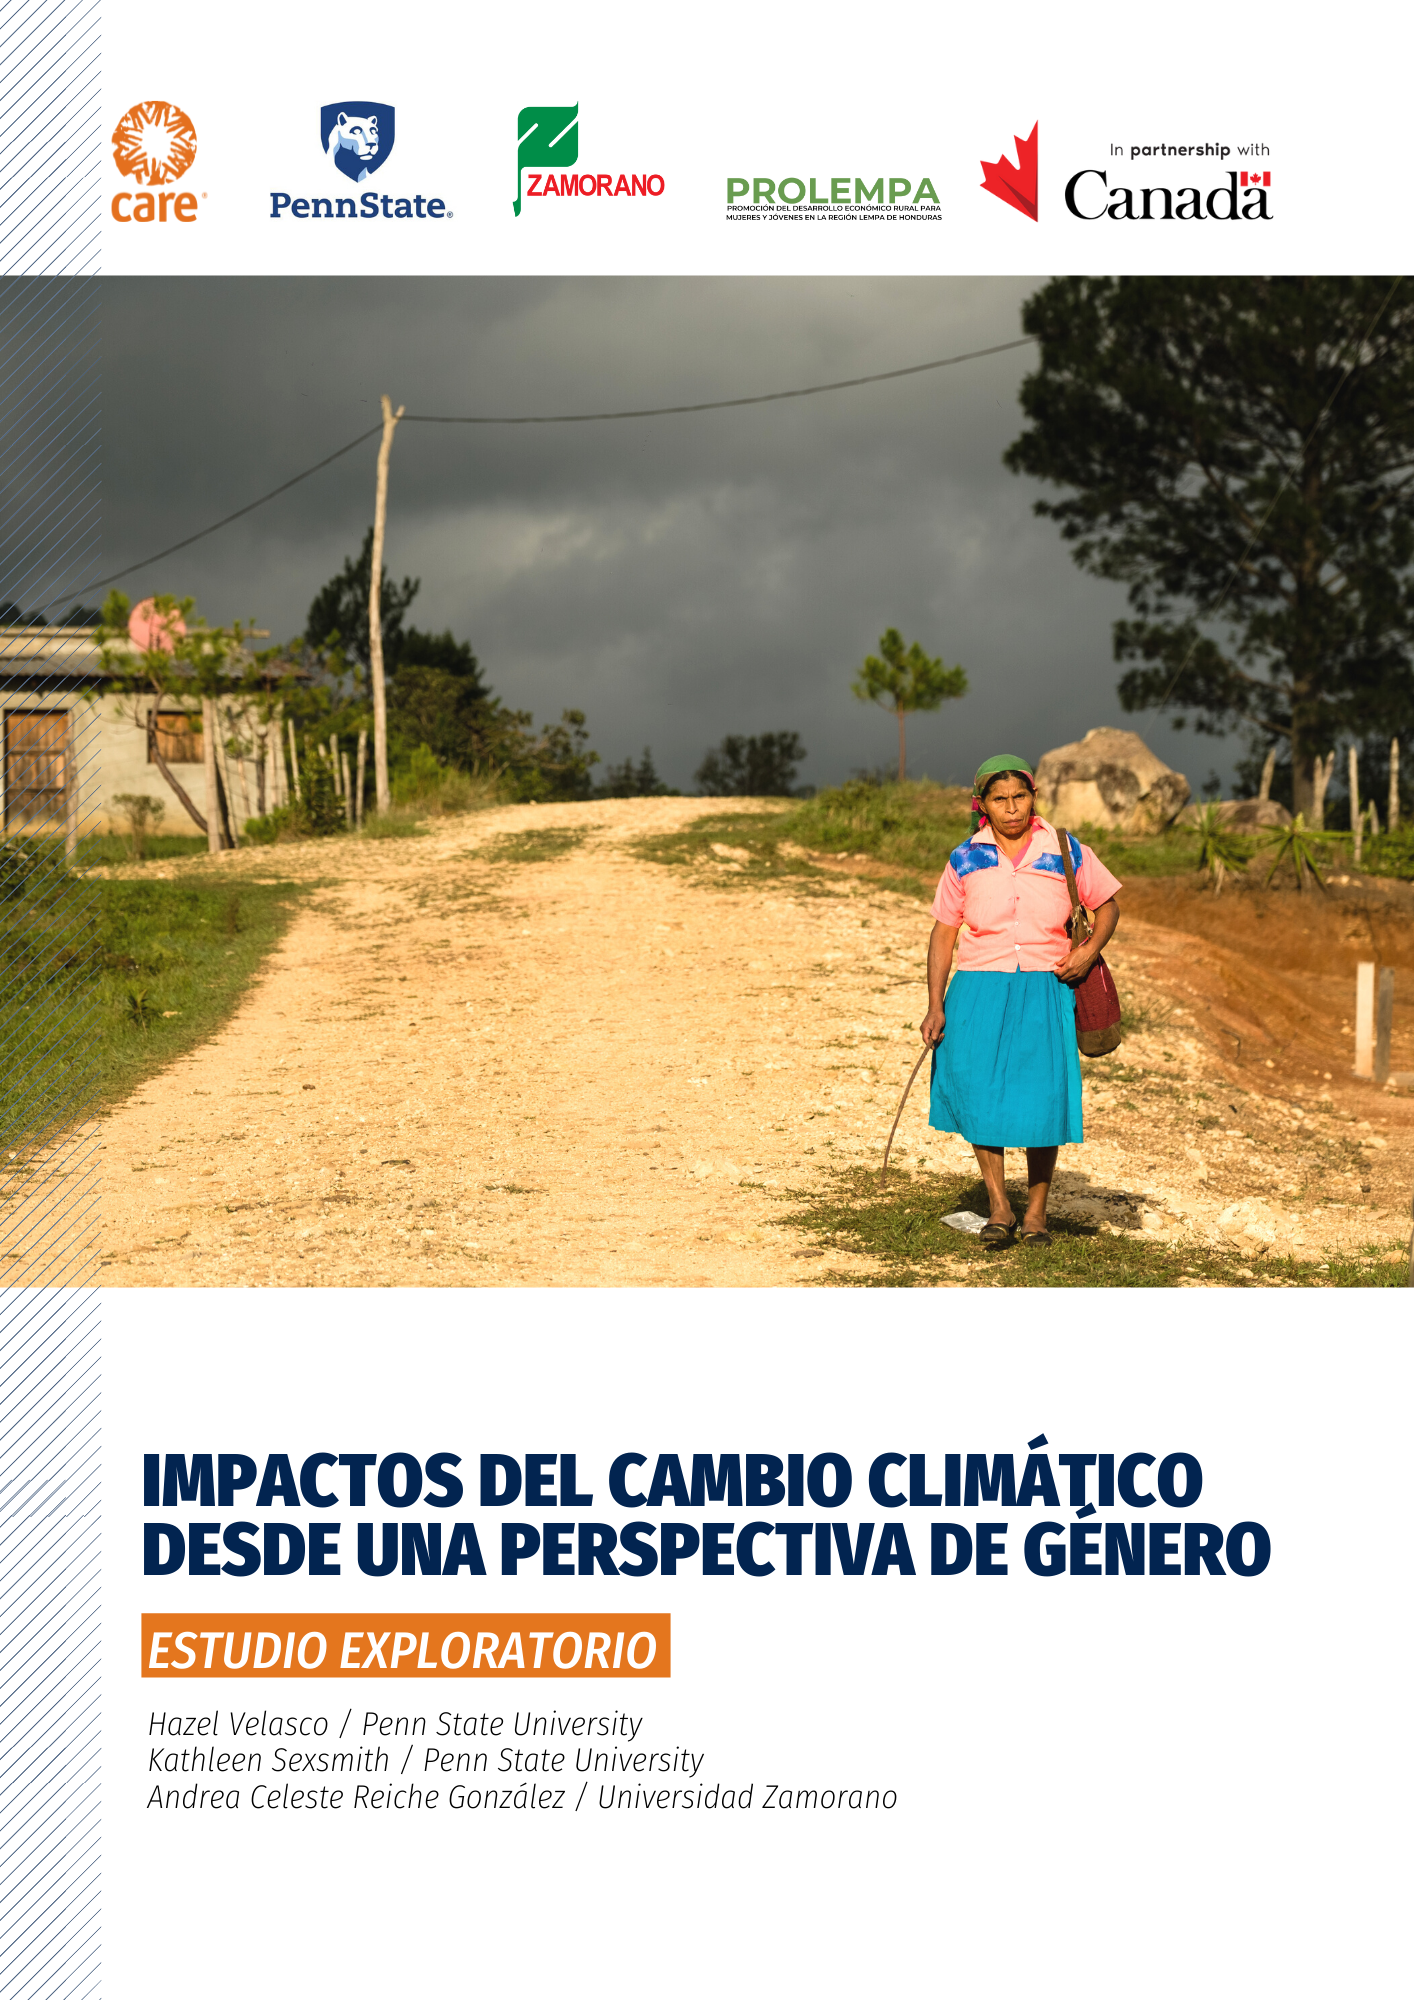 ESTUDIO: Impactos del cambio climático desde una perspectiva de género